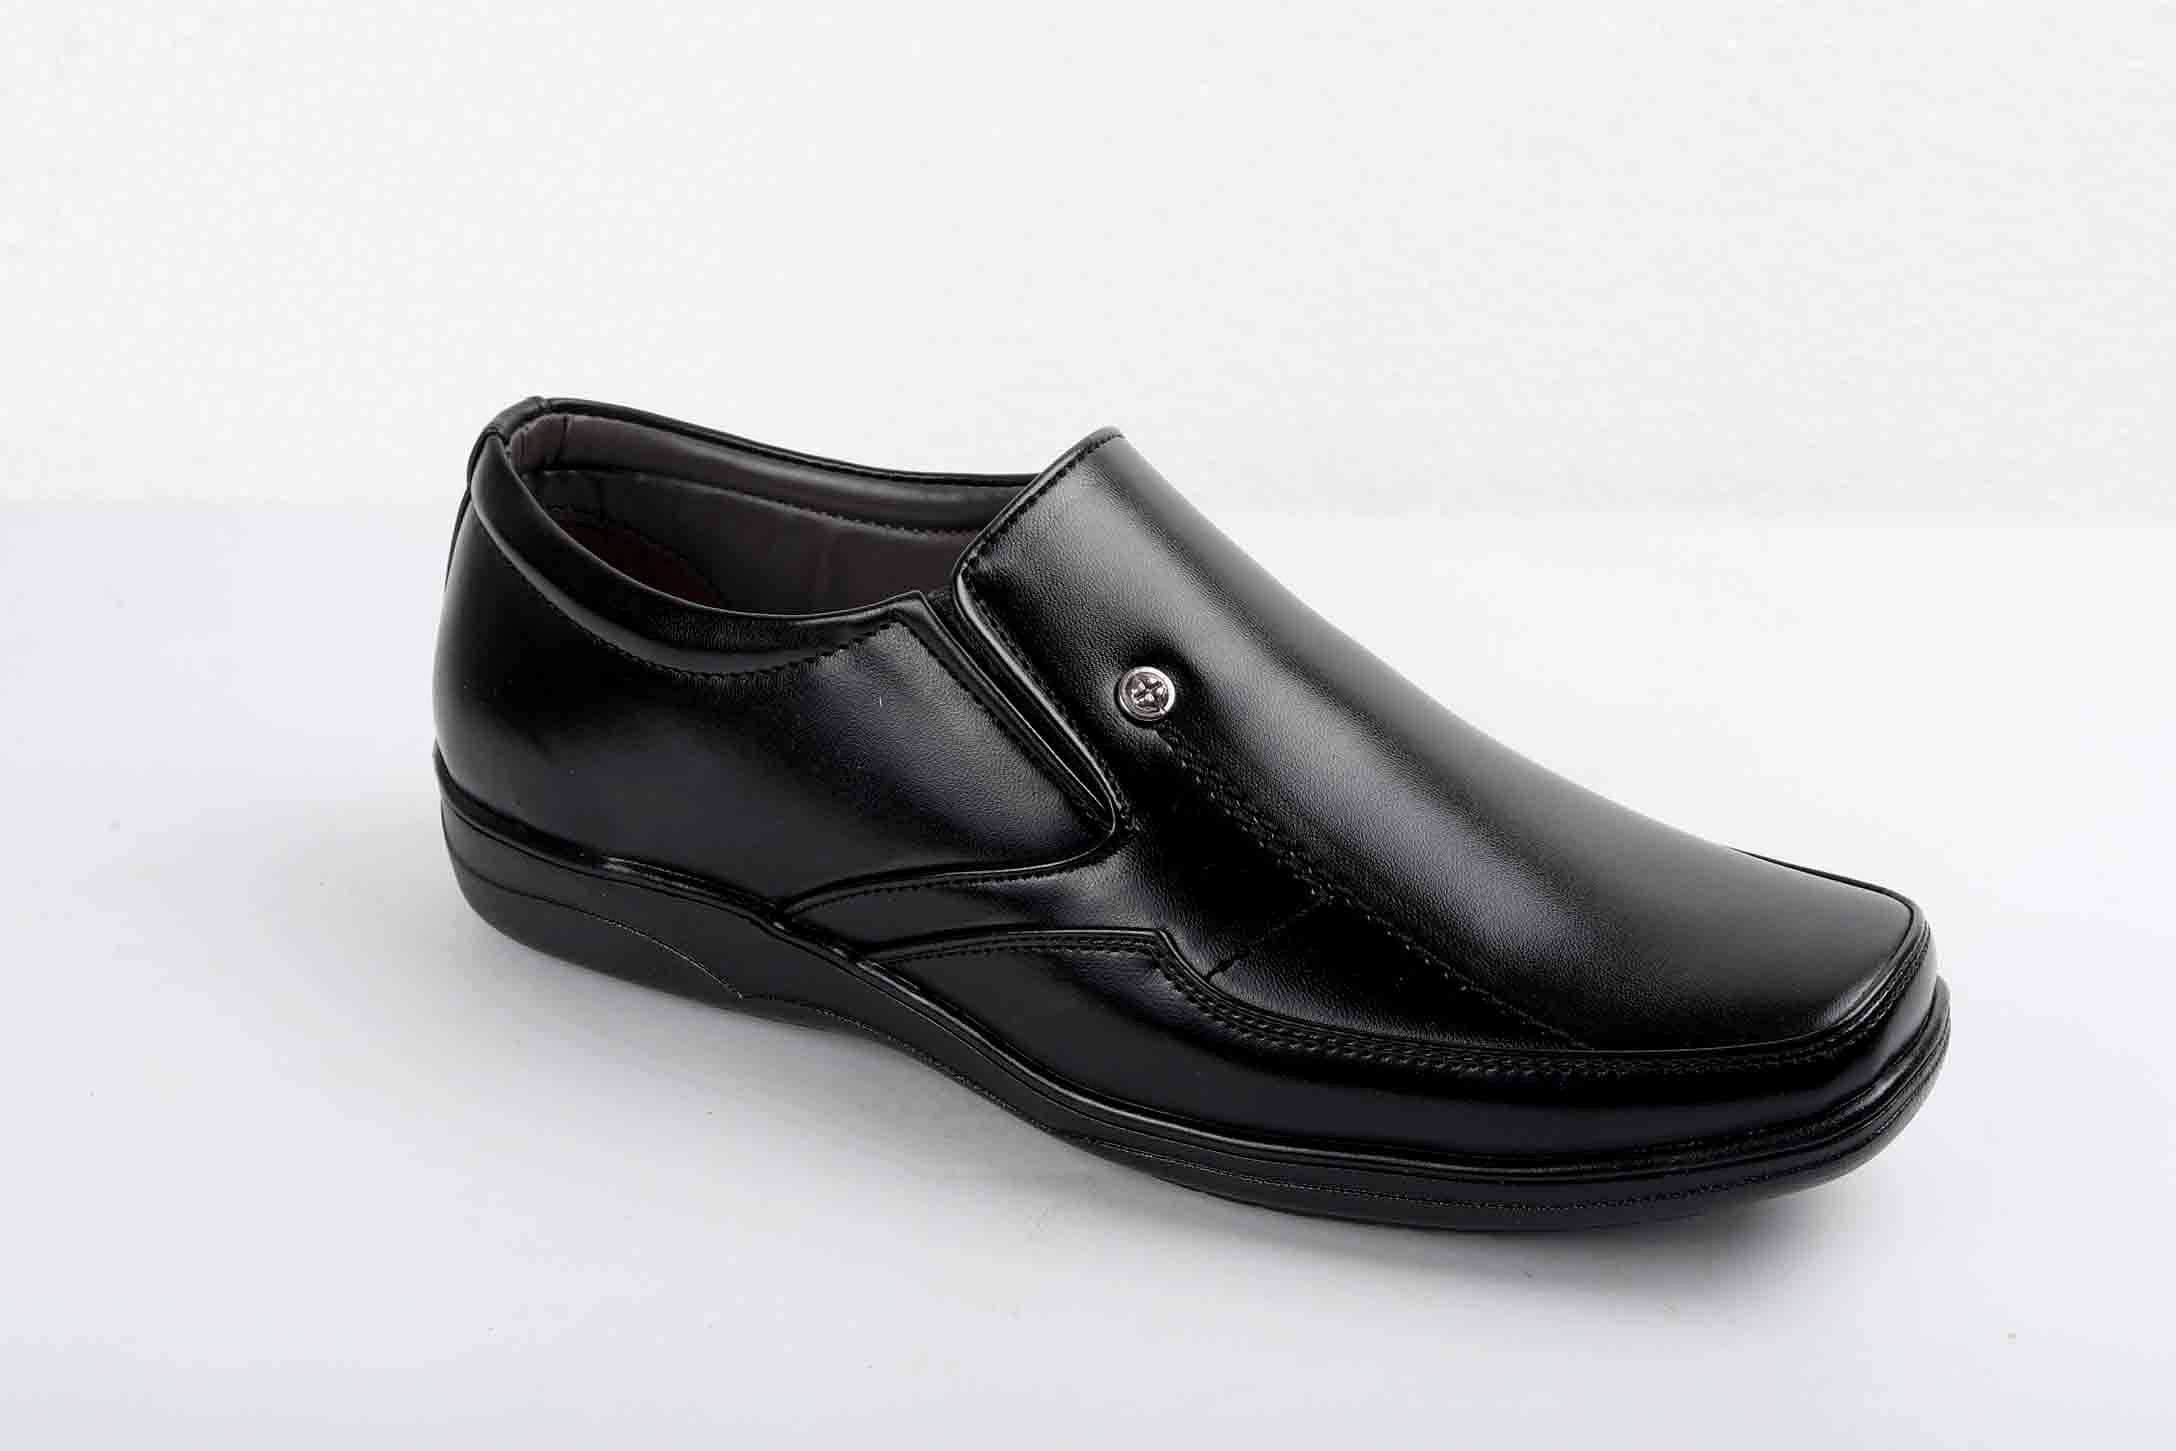 Pair-it Men moccasin Formal Shoes - Black- LZ-RYDER102